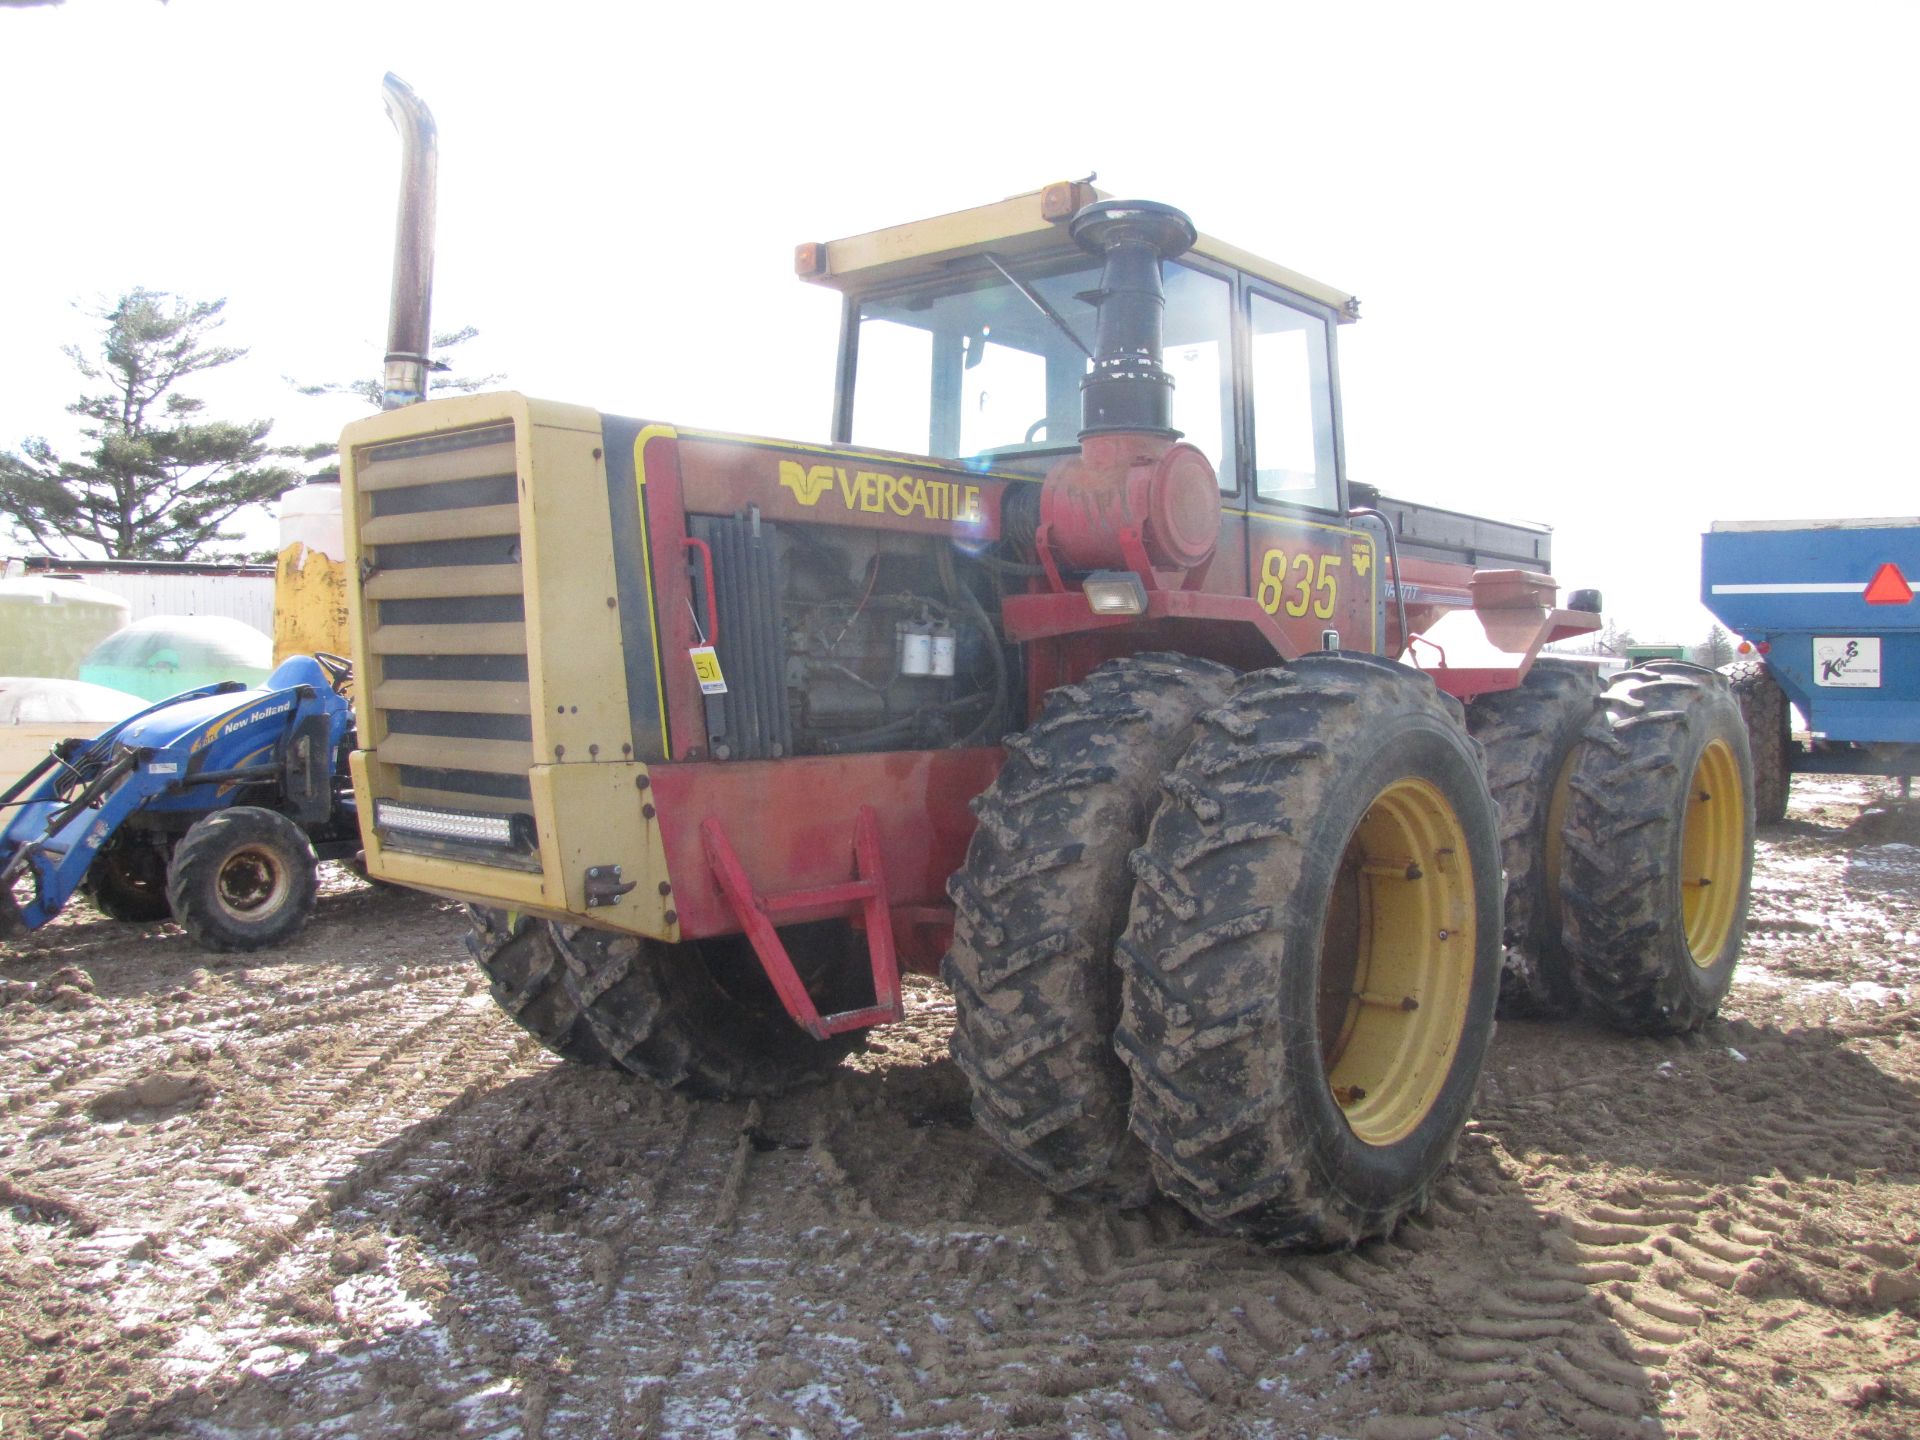 Versatile 835 tractor - Image 3 of 51